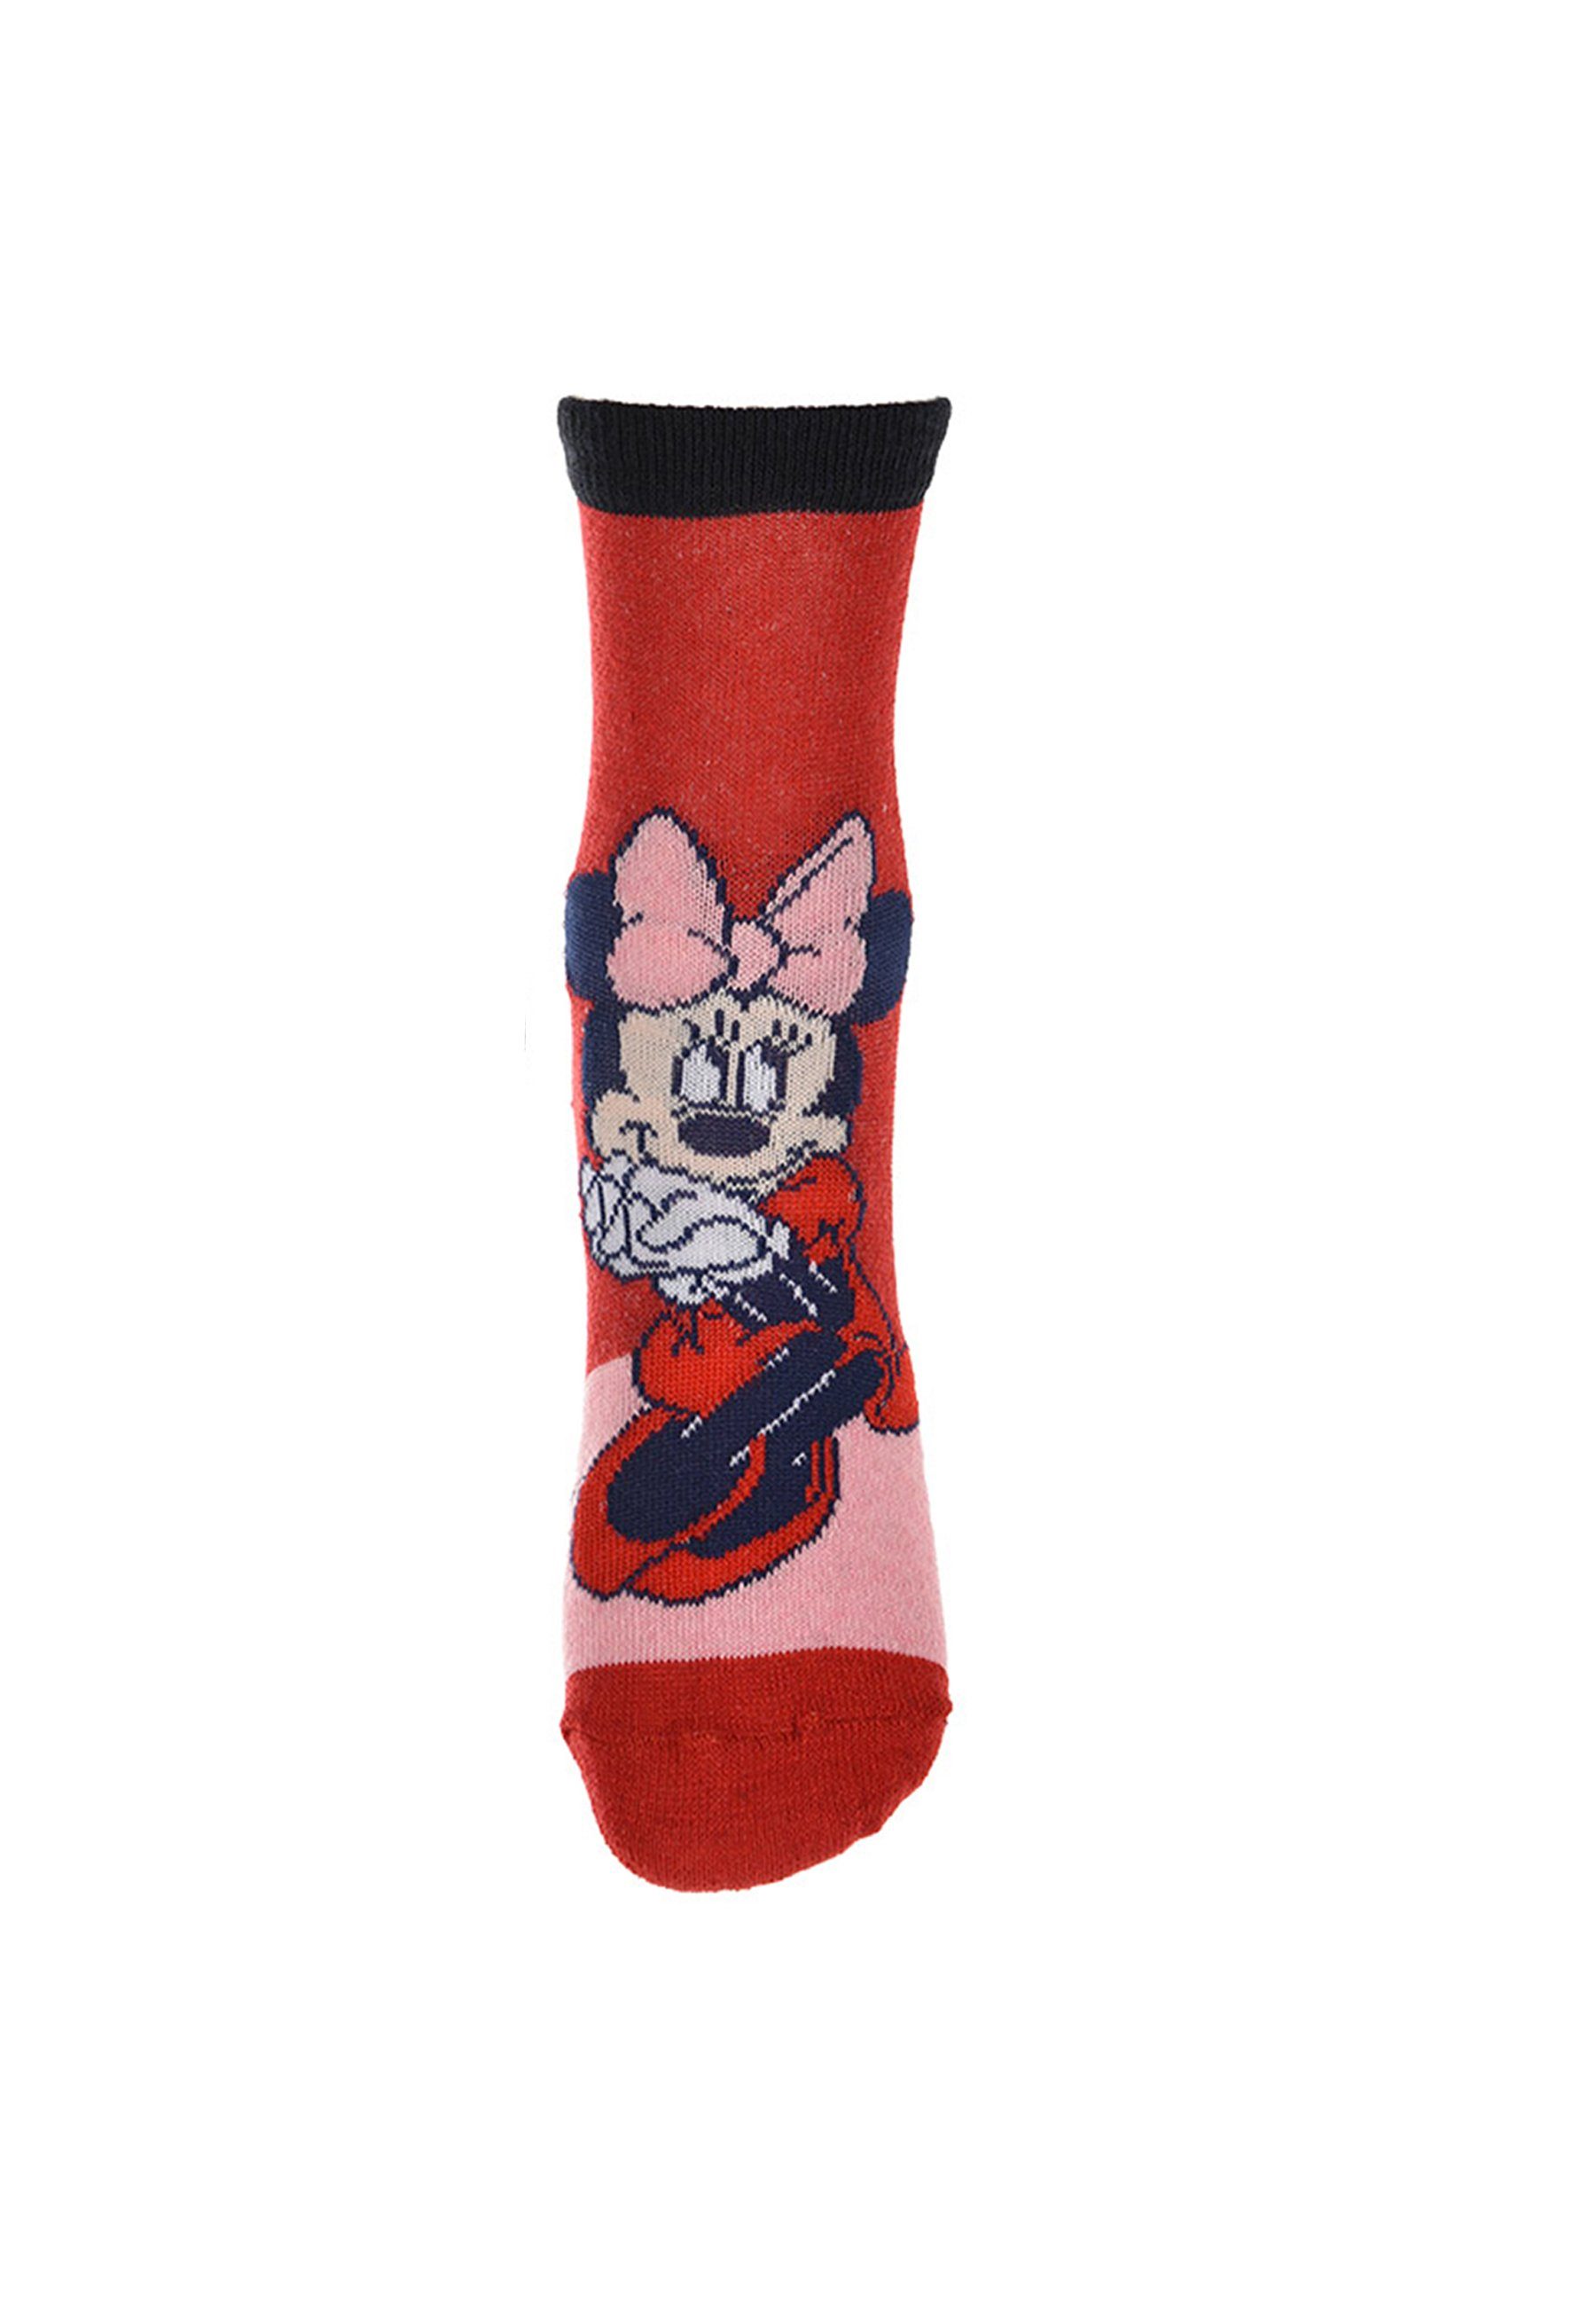 Strümpfe Socken Disney Kinder Minnie Socken Mouse Minnie Mädchen